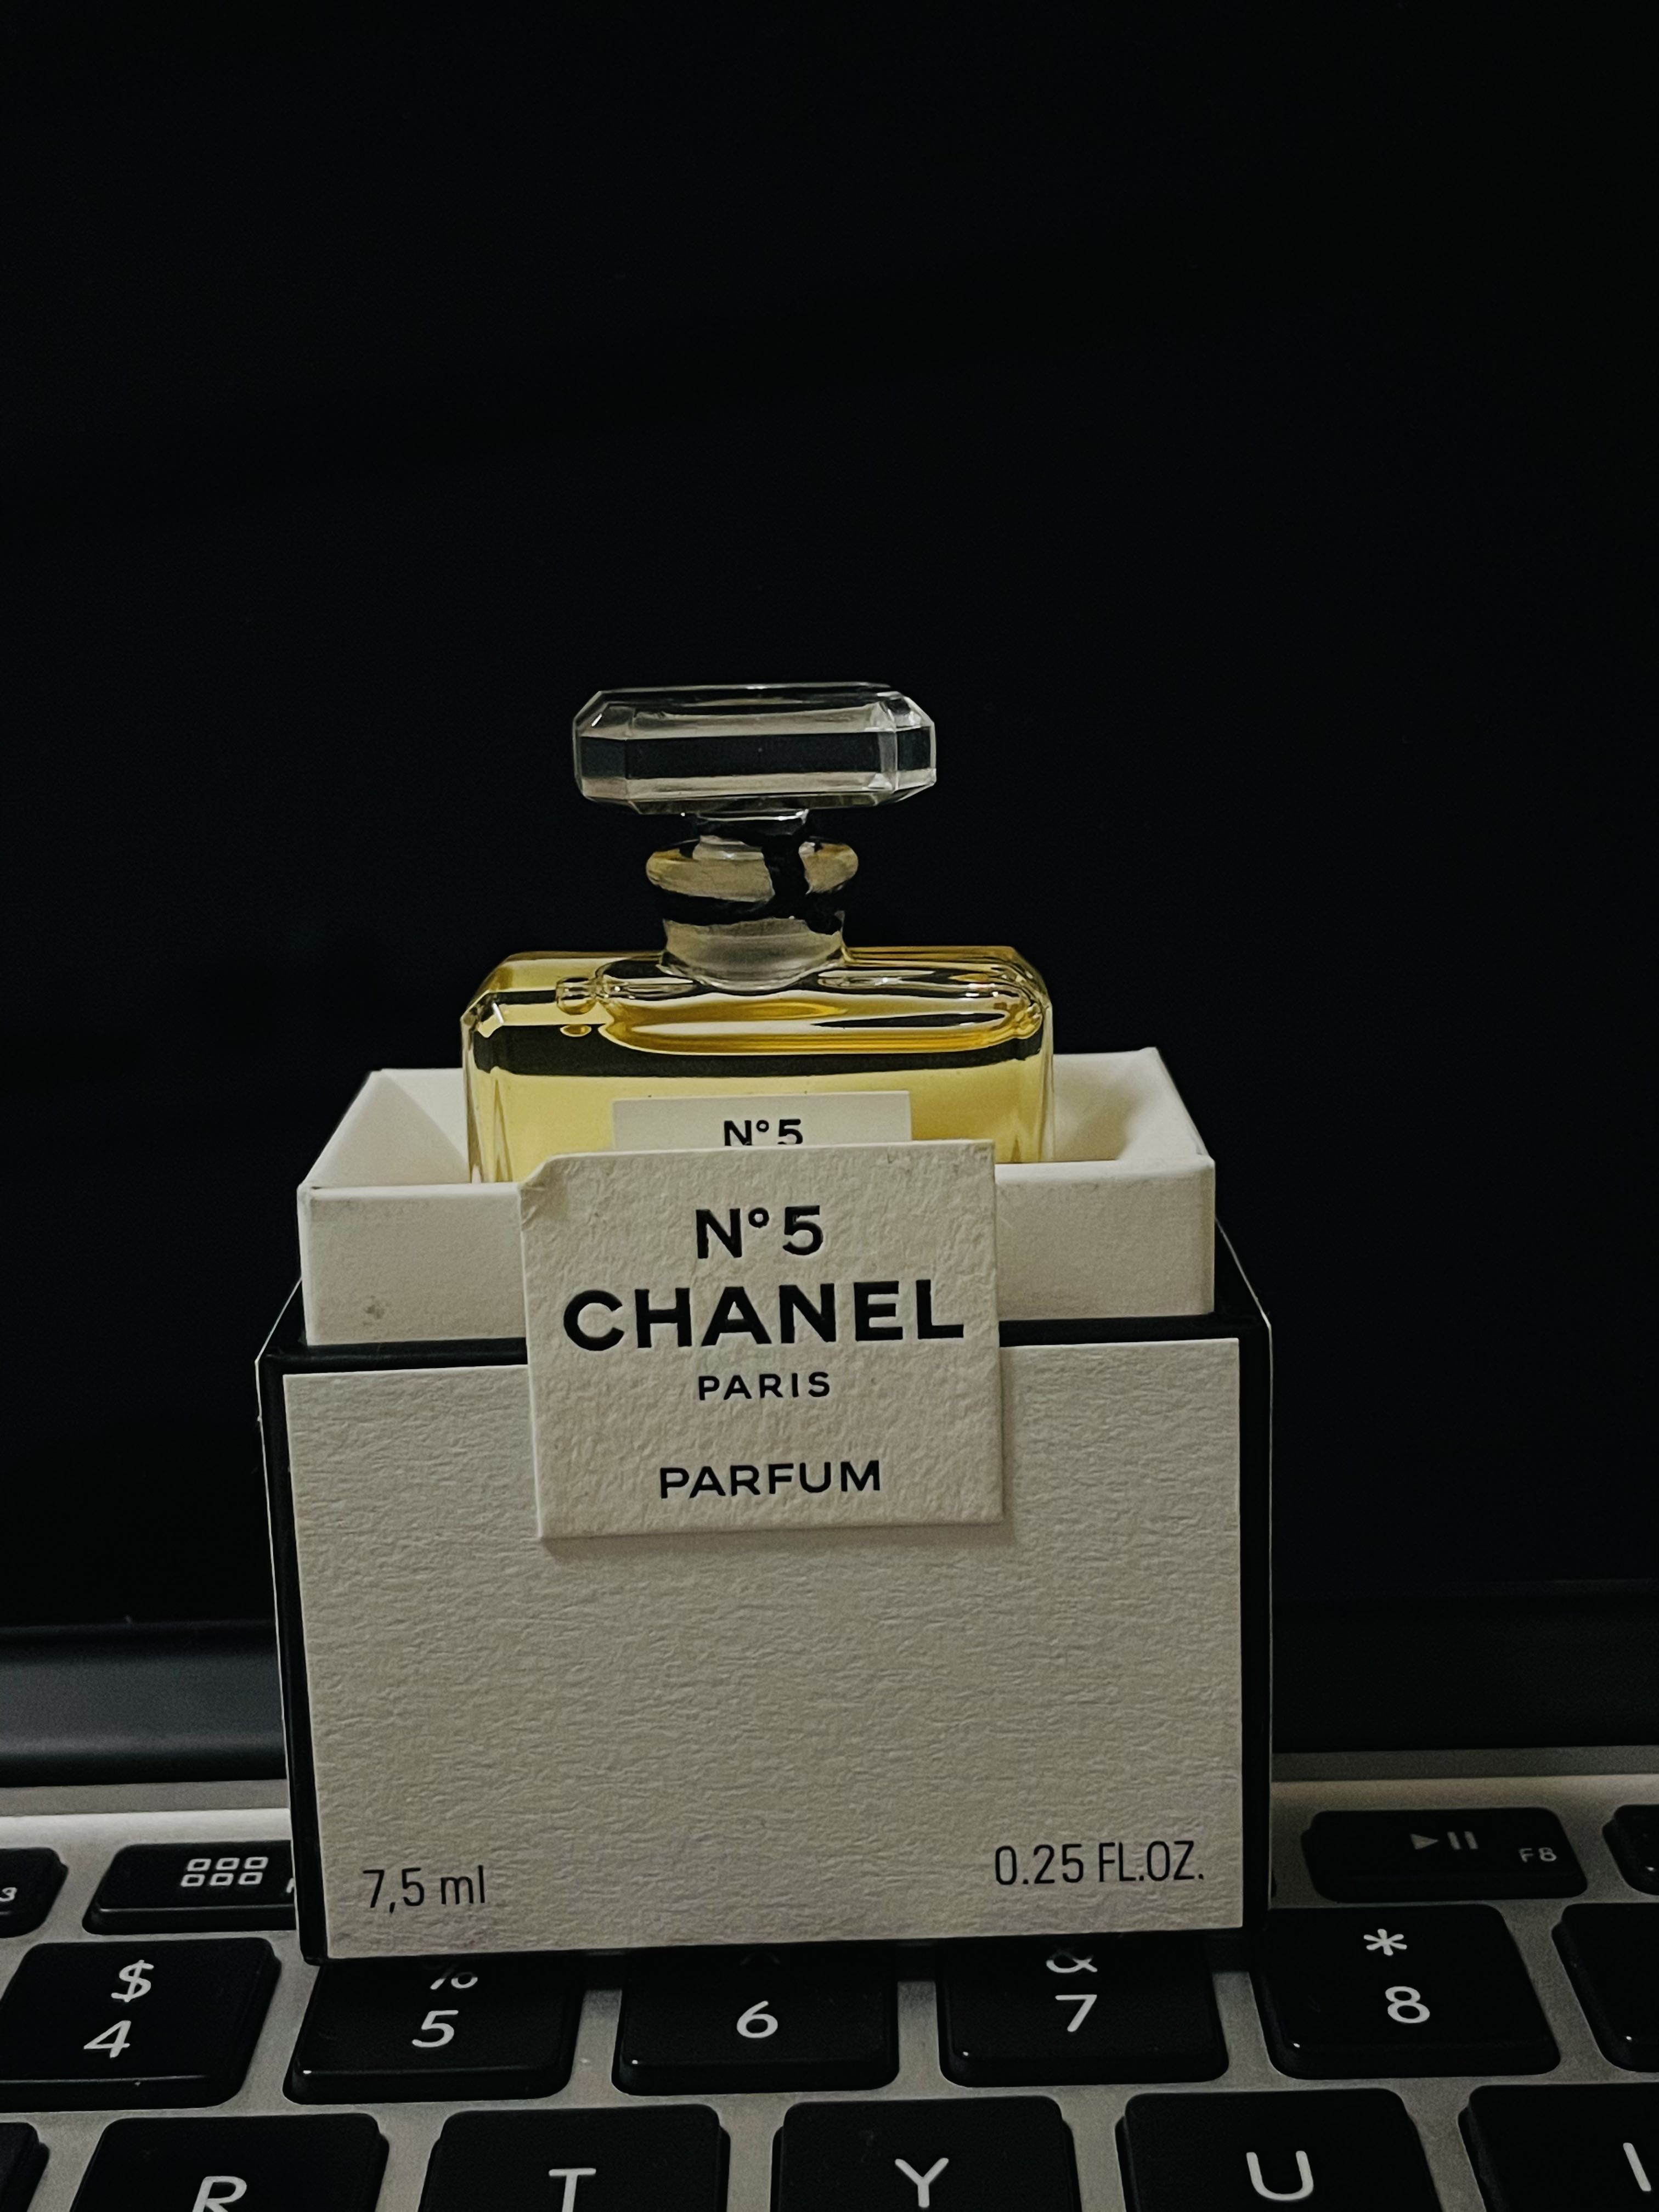 Chanel N5 Parfum 7.5ml